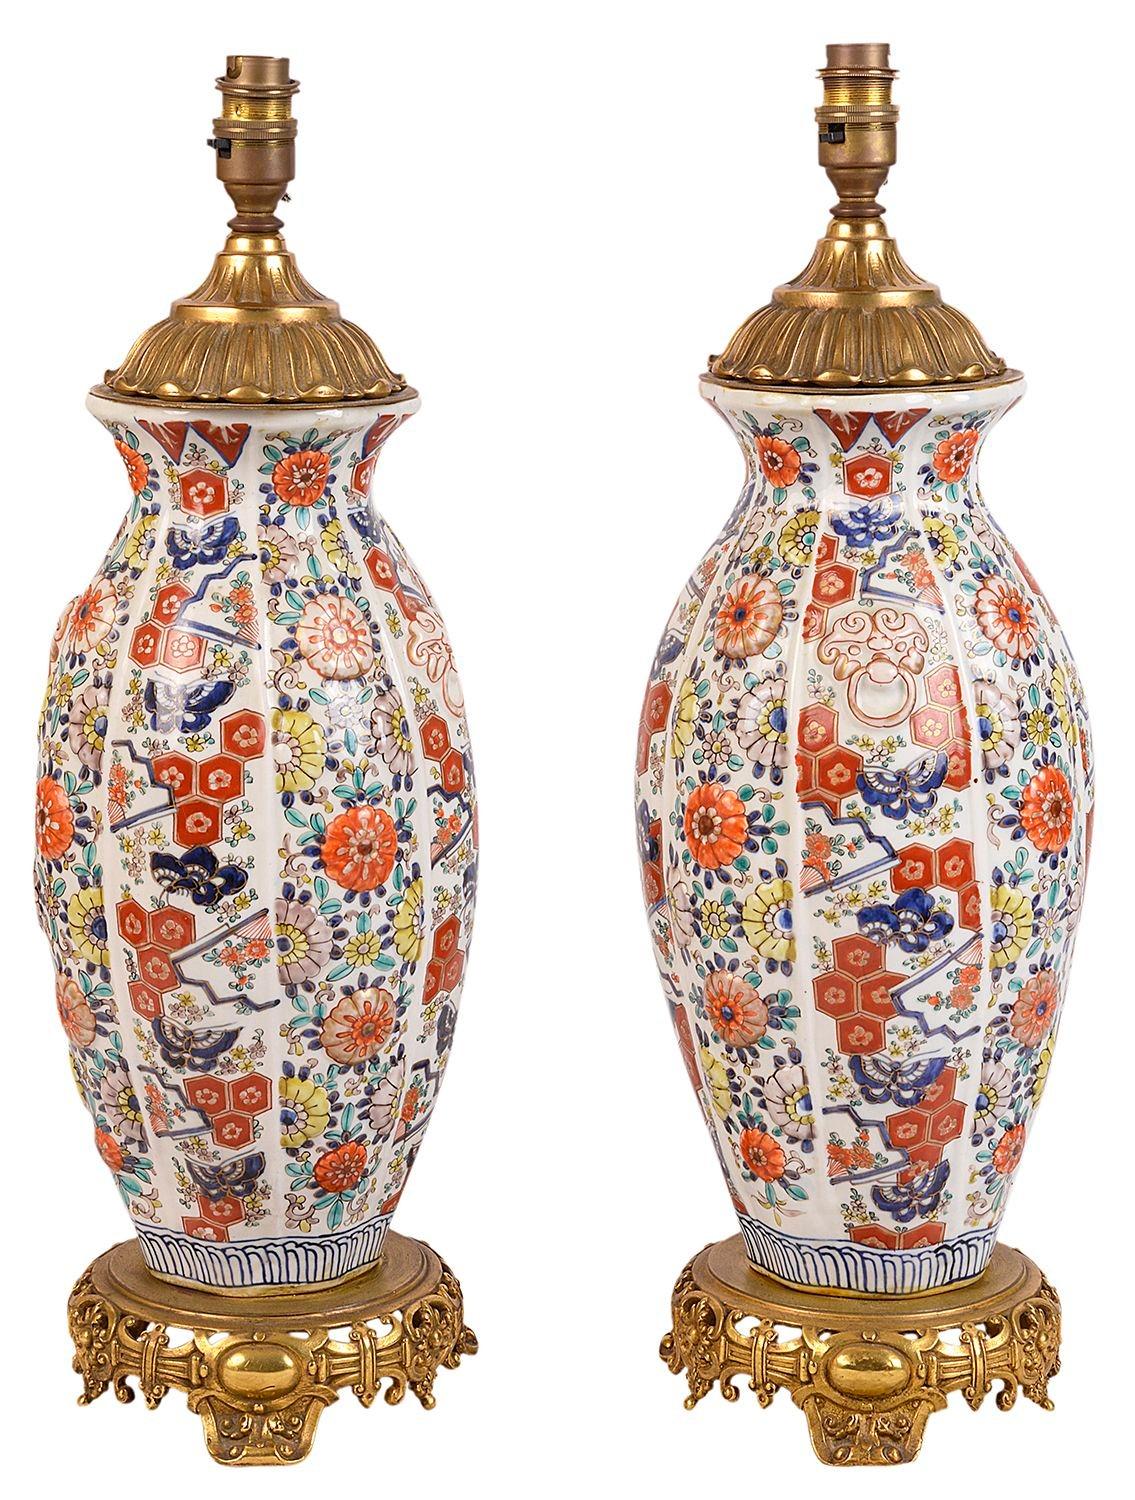 Paire de vases / lampes à facettes Imari du Japon du XIXe siècle de très bonne qualité, chacun avec une décoration florale classique et des motifs, reposant sur de magnifiques supports de style oriental en bronze doré français.
 
Lot 72 G9523/2 YYKN